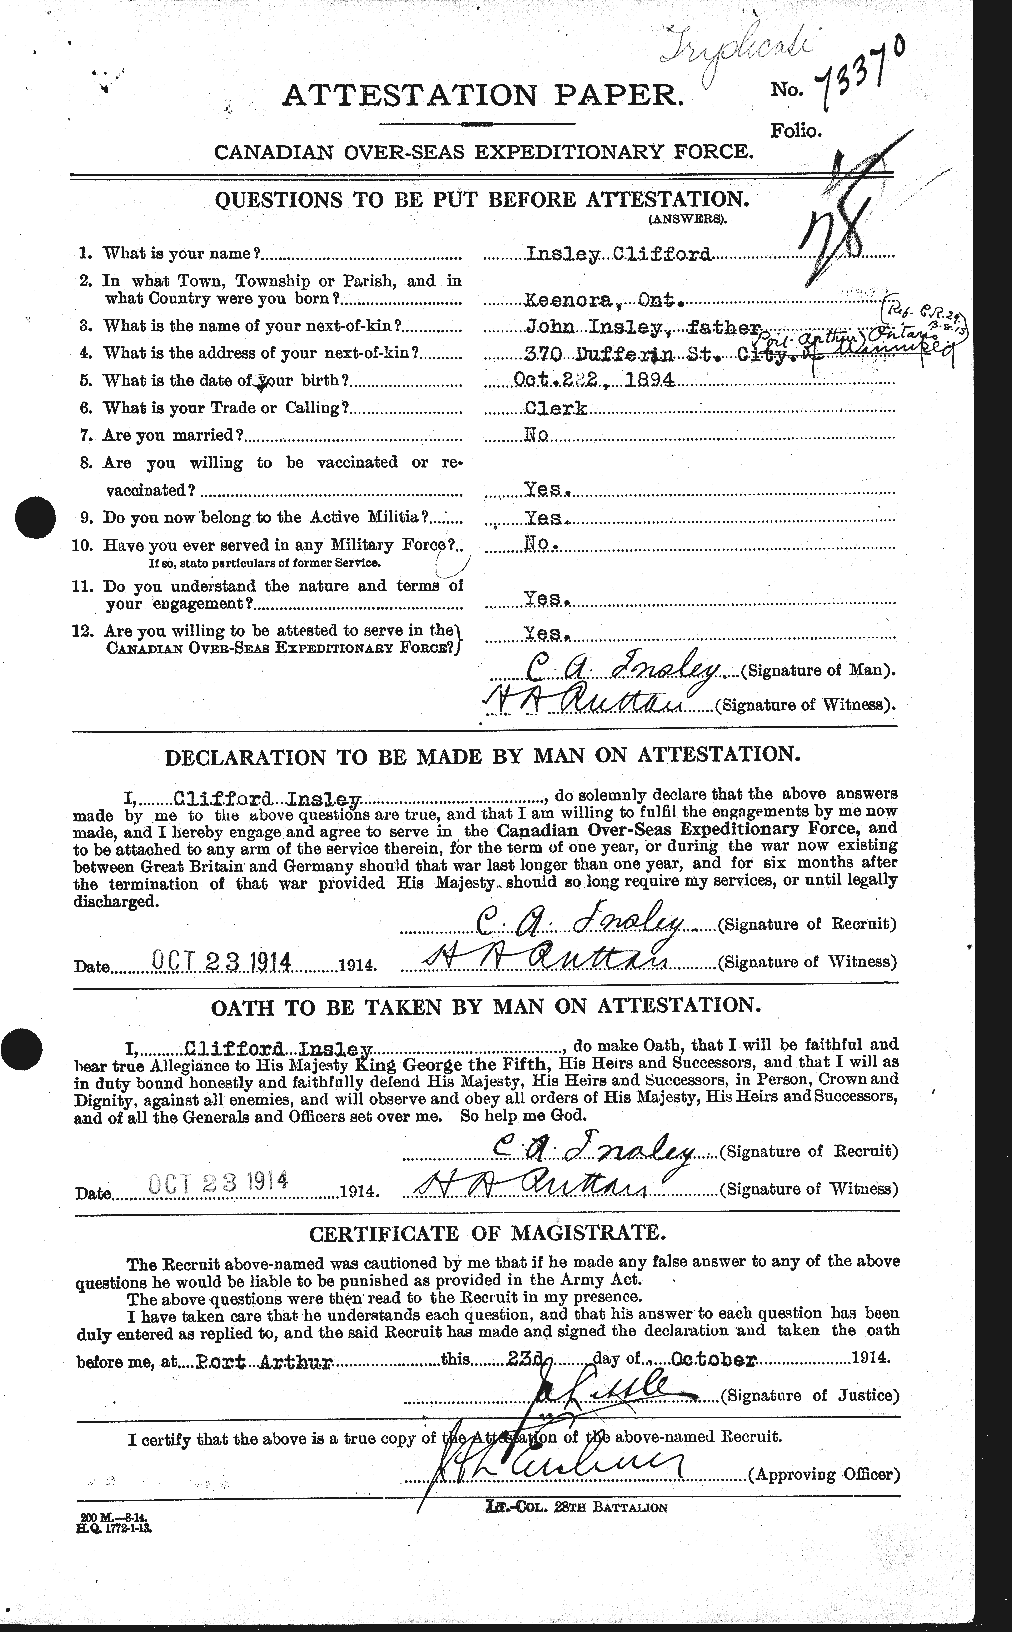 Dossiers du Personnel de la Première Guerre mondiale - CEC 415522a